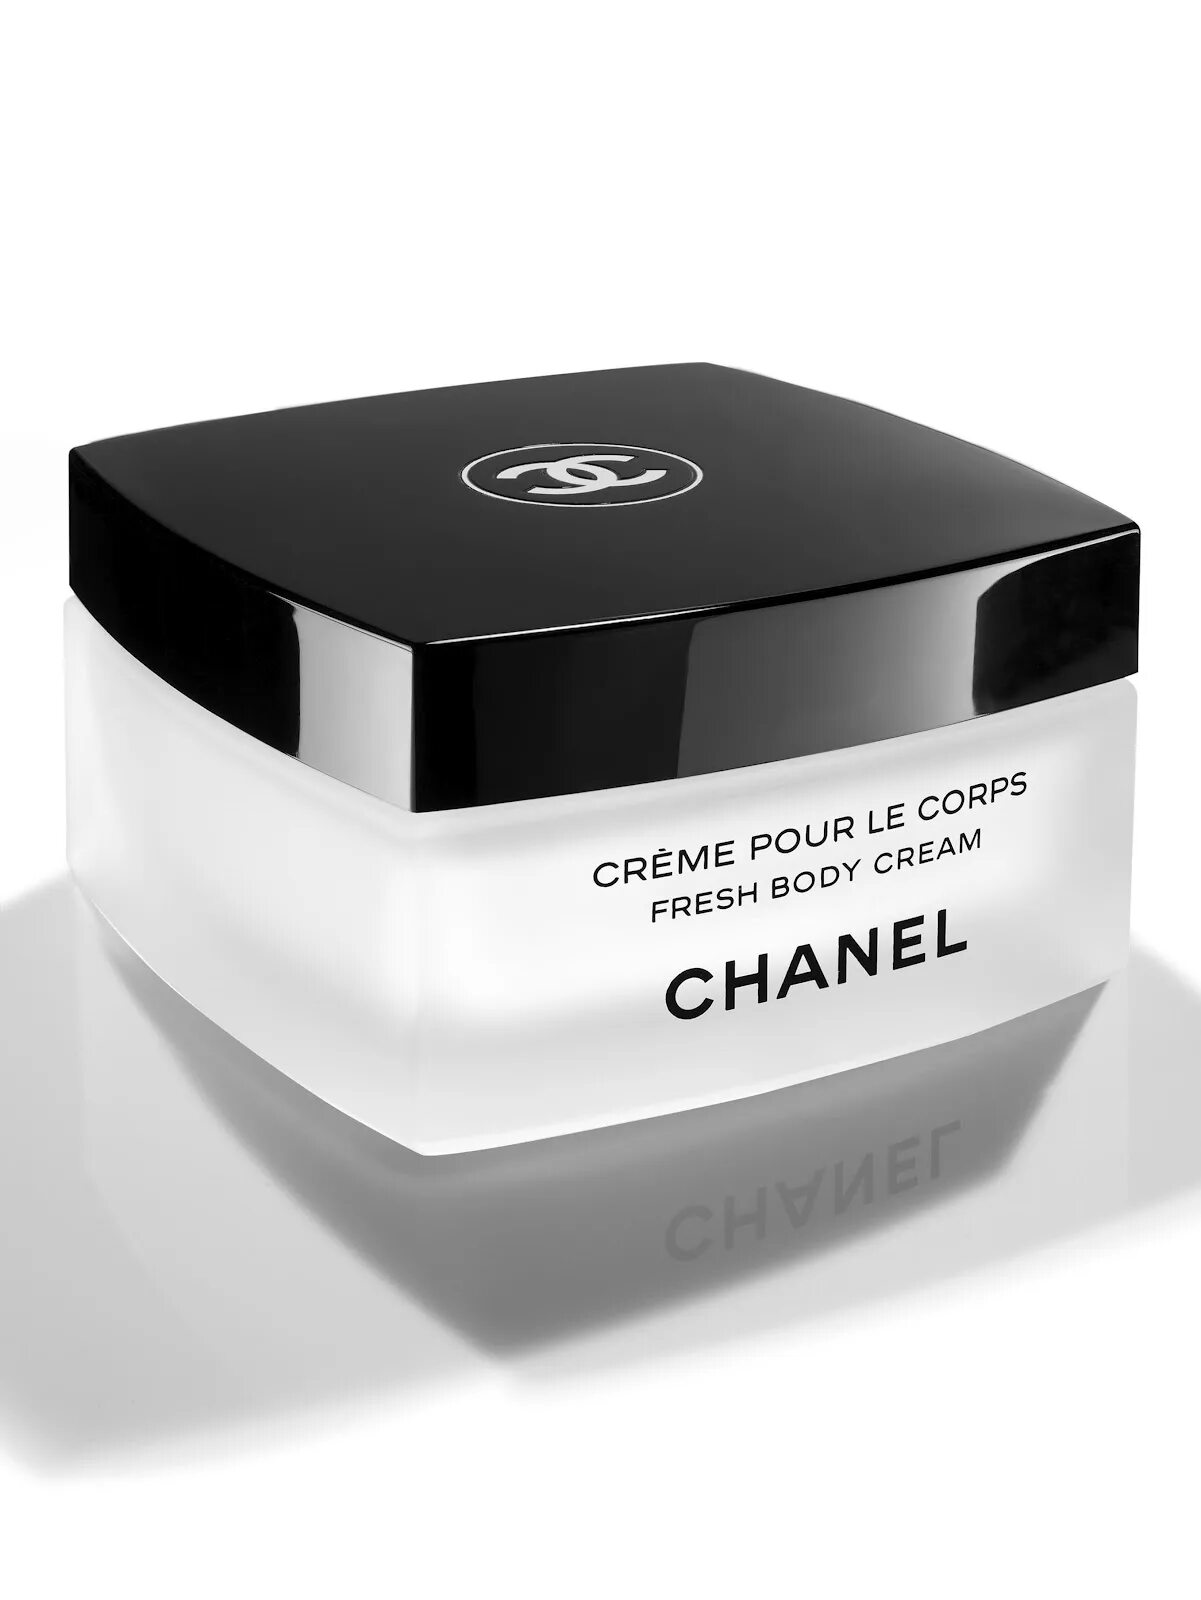 Крем Шанель Creme pour le Corps. Крем Chanel body. Крем Коко Шанель для лица. Крем фрэш для тела Шанель 150.